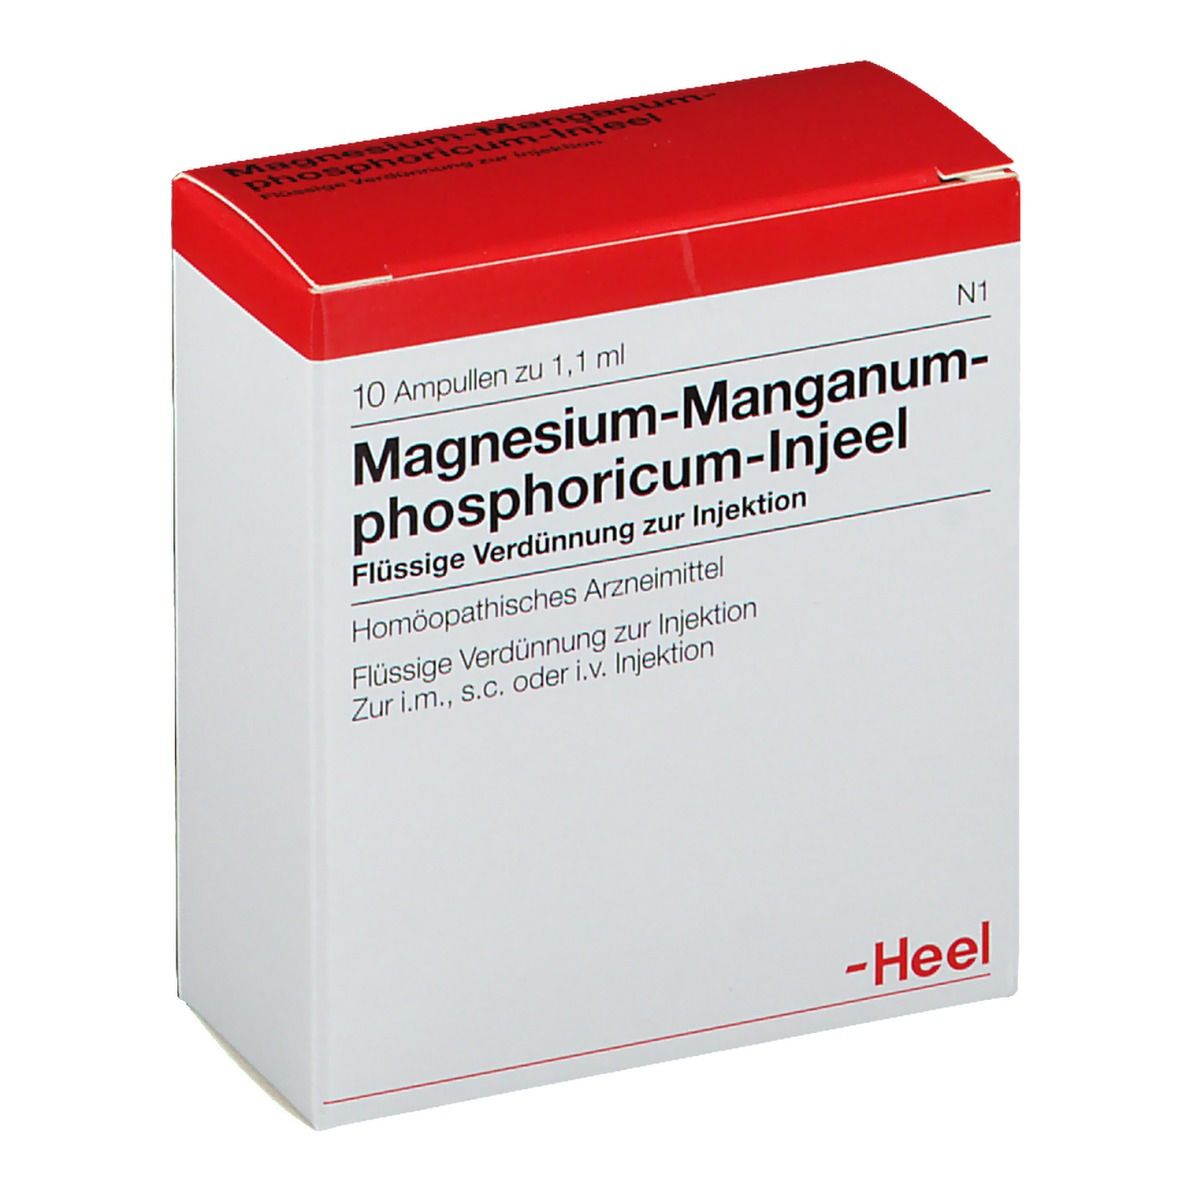 Magnesium-Manganum-phosphoricum-Injeel® Ampullen